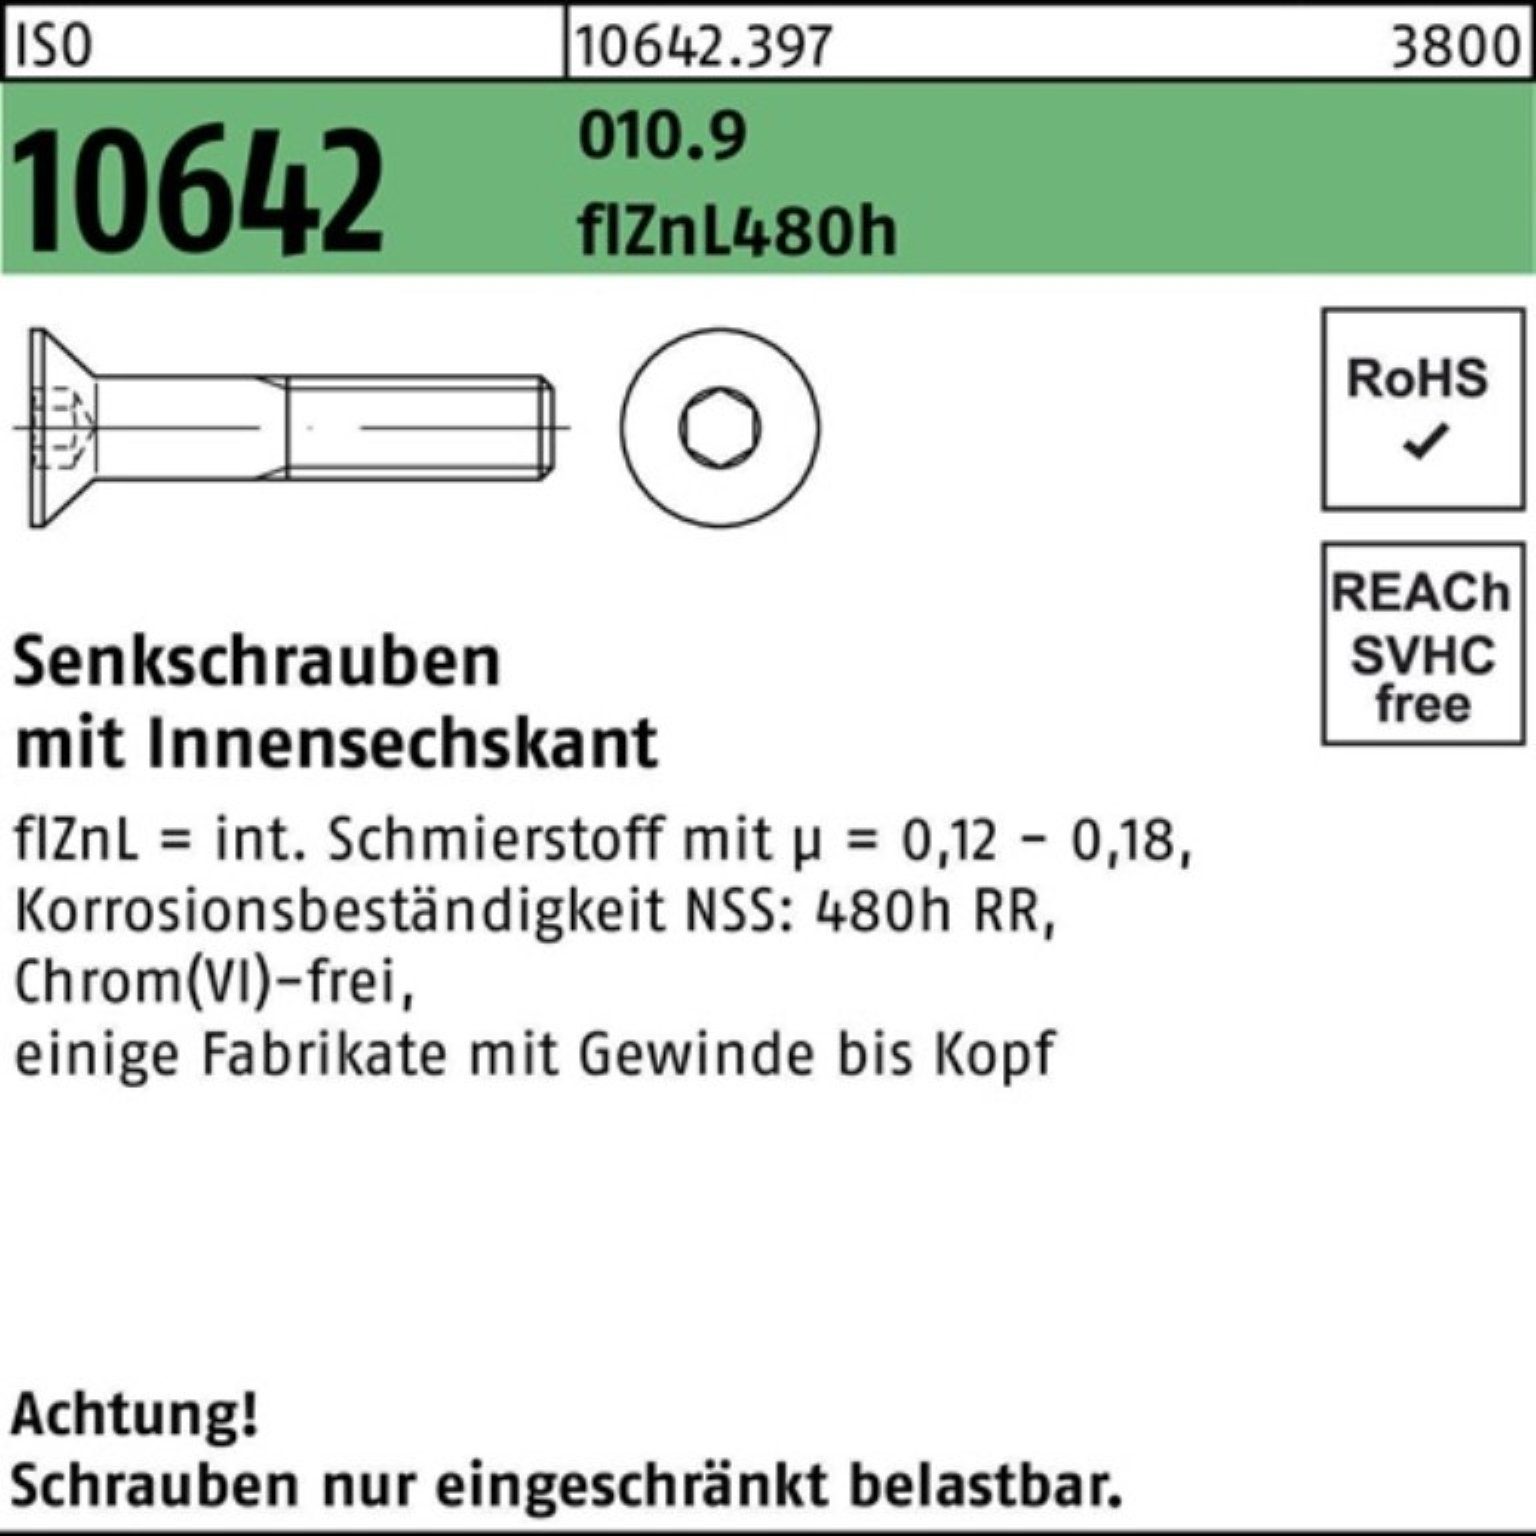 Reyher Senkschraube 100er Innen-6kt Senkschraube 480h 010.9 flZnL Pack 10642 M12x70 zi ISO